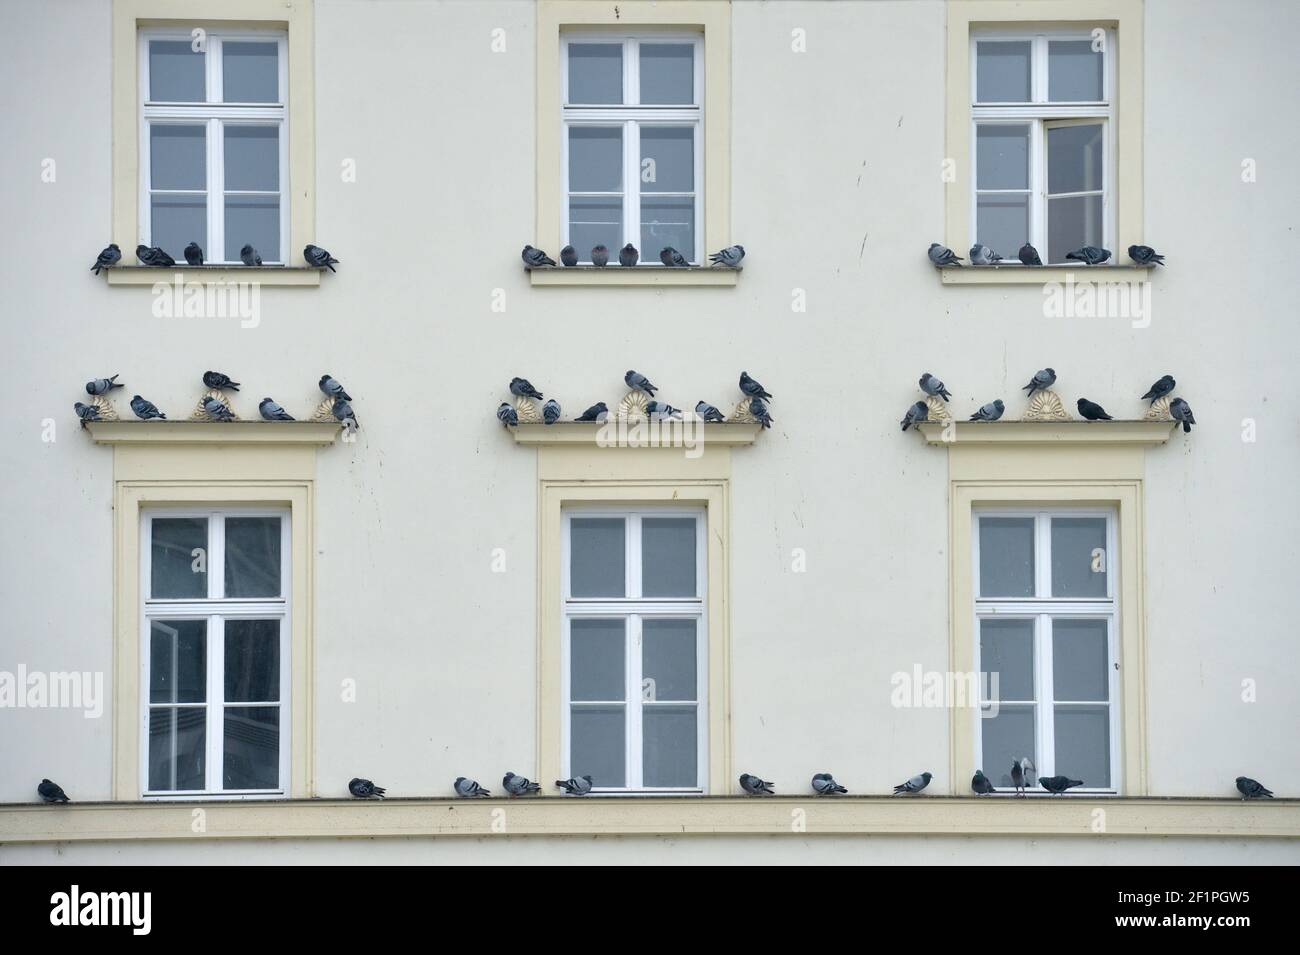 06 de febrero de 2021, Sajonia, Leipzig: Las palomas de la ciudad se sientan en las ventanas de un edificio histórico en el Brühl en Leipzig. Foto: Volkmar Heinz/dpa-Zentralbild/ZB Foto de stock